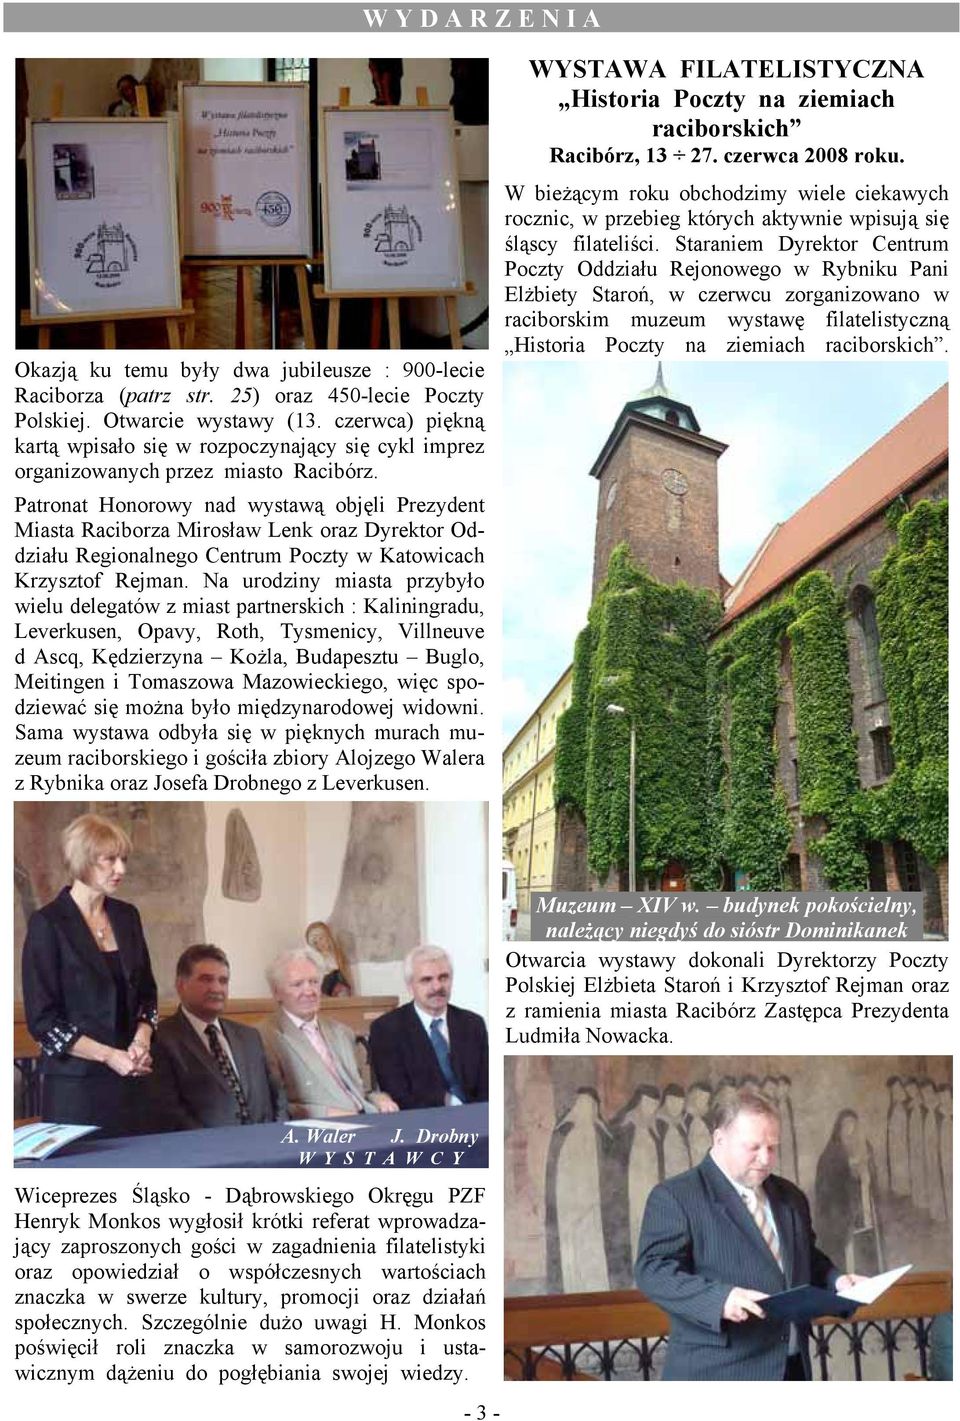 Patronat Honorowy nad wystawą objęli Prezydent Miasta Raciborza Mirosław Lenk oraz Dyrektor Oddziału Regionalnego Centrum Poczty w Katowicach Krzysztof Rejman.